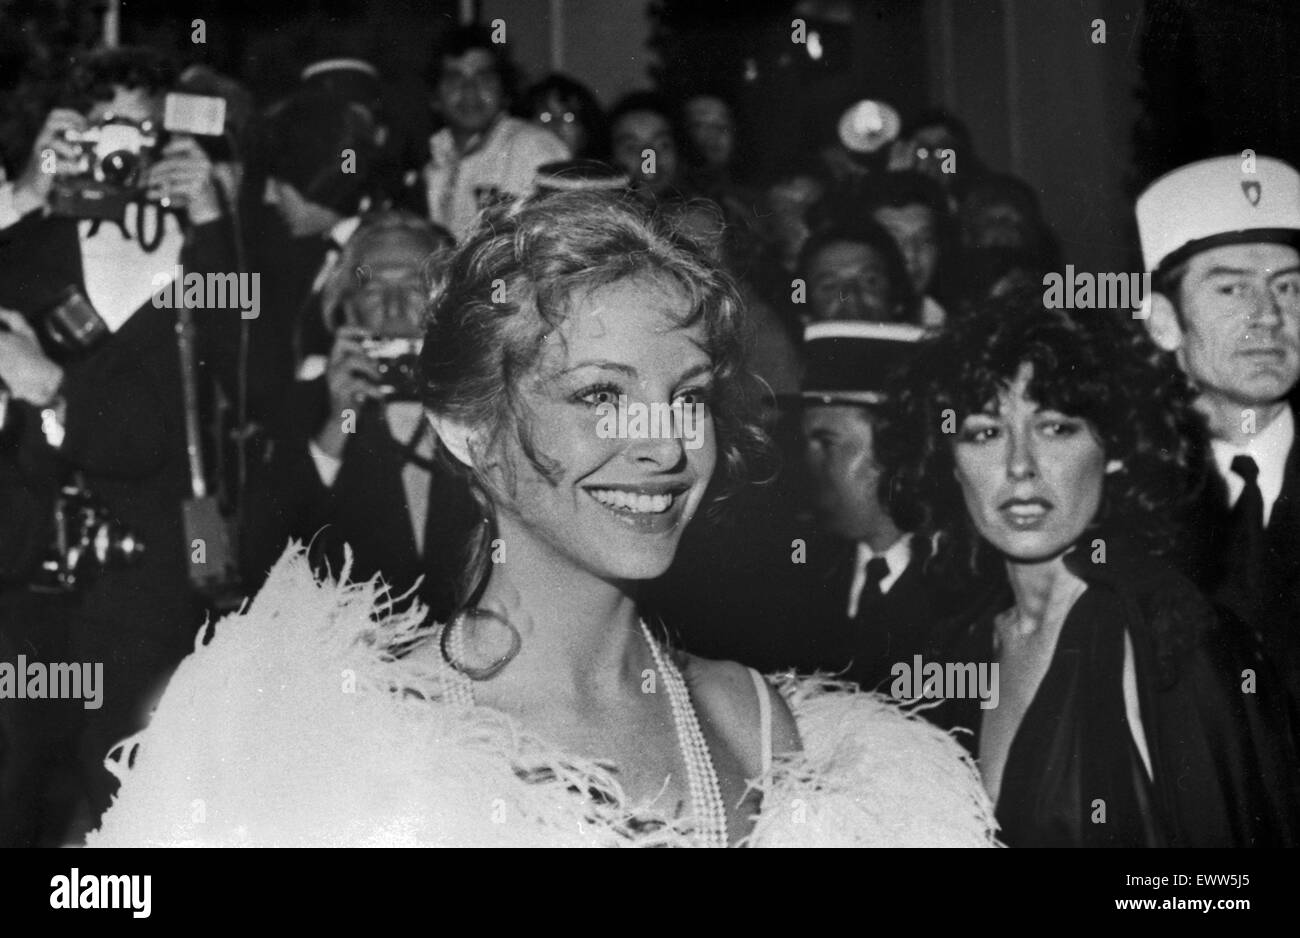 Roma Sydne beim Film Festival di Cannes 1974, Frankreich 1970er Jahre. Sydne Roma al Cannes Film Festival 1974, Francia degli anni settanta. Foto Stock